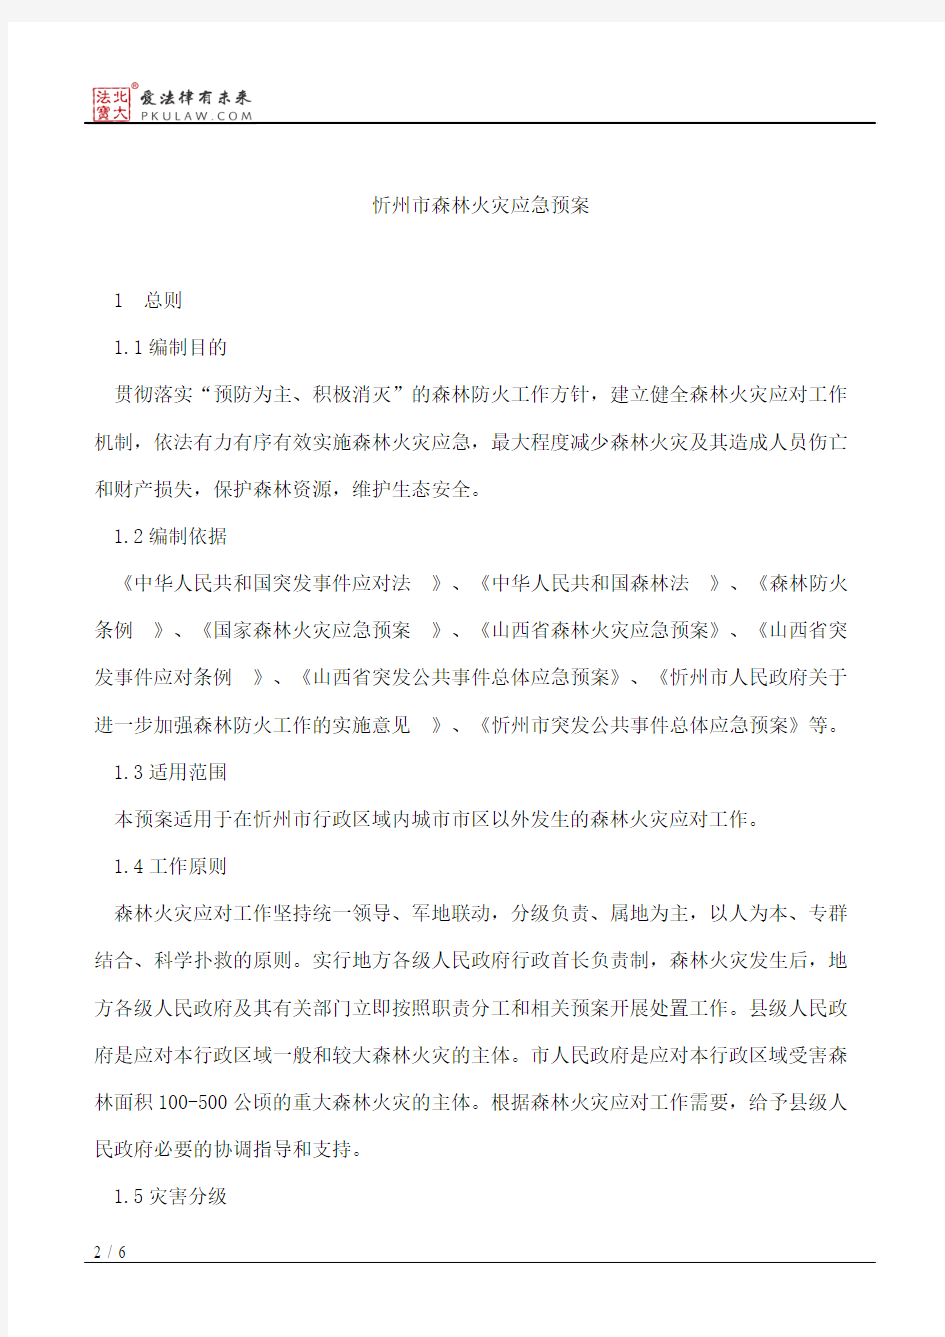 忻州市人民政府办公厅关于印发忻州市森林火灾应急预案的通知(2015修订)